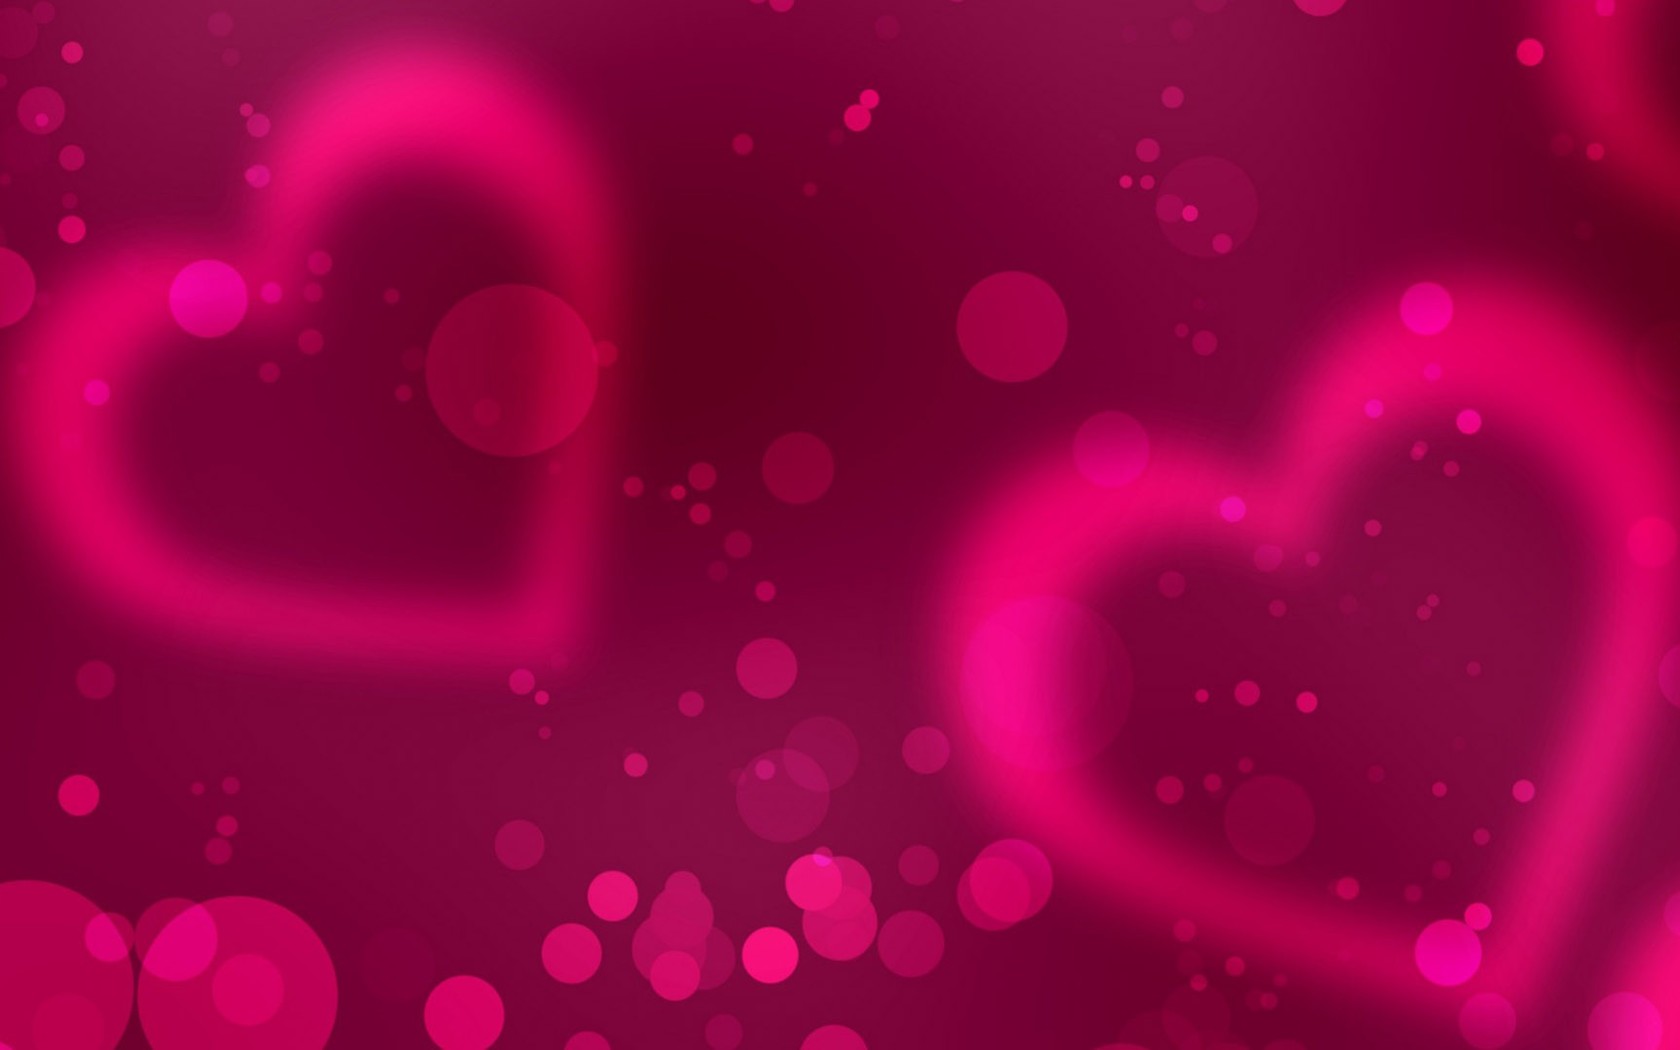 76+] Pink Heart Wallpaper - WallpaperSafari